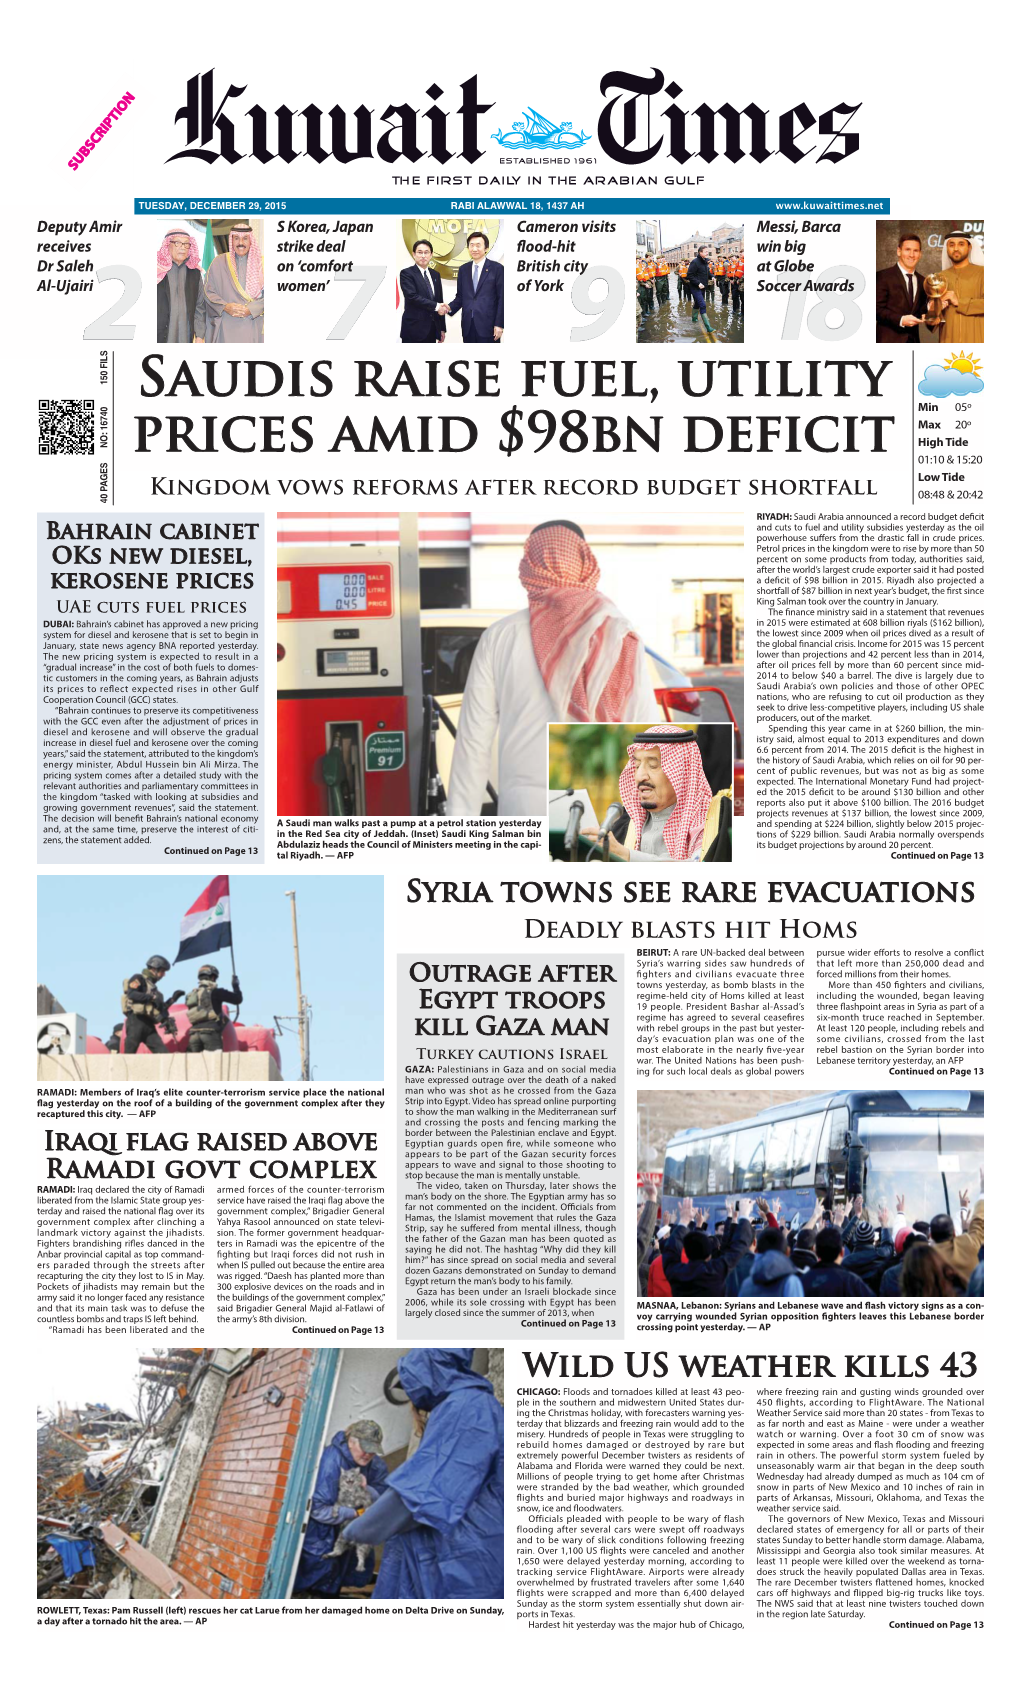 Saudis Raise Fuel, Utility Prices Amid $98Bn Deficit